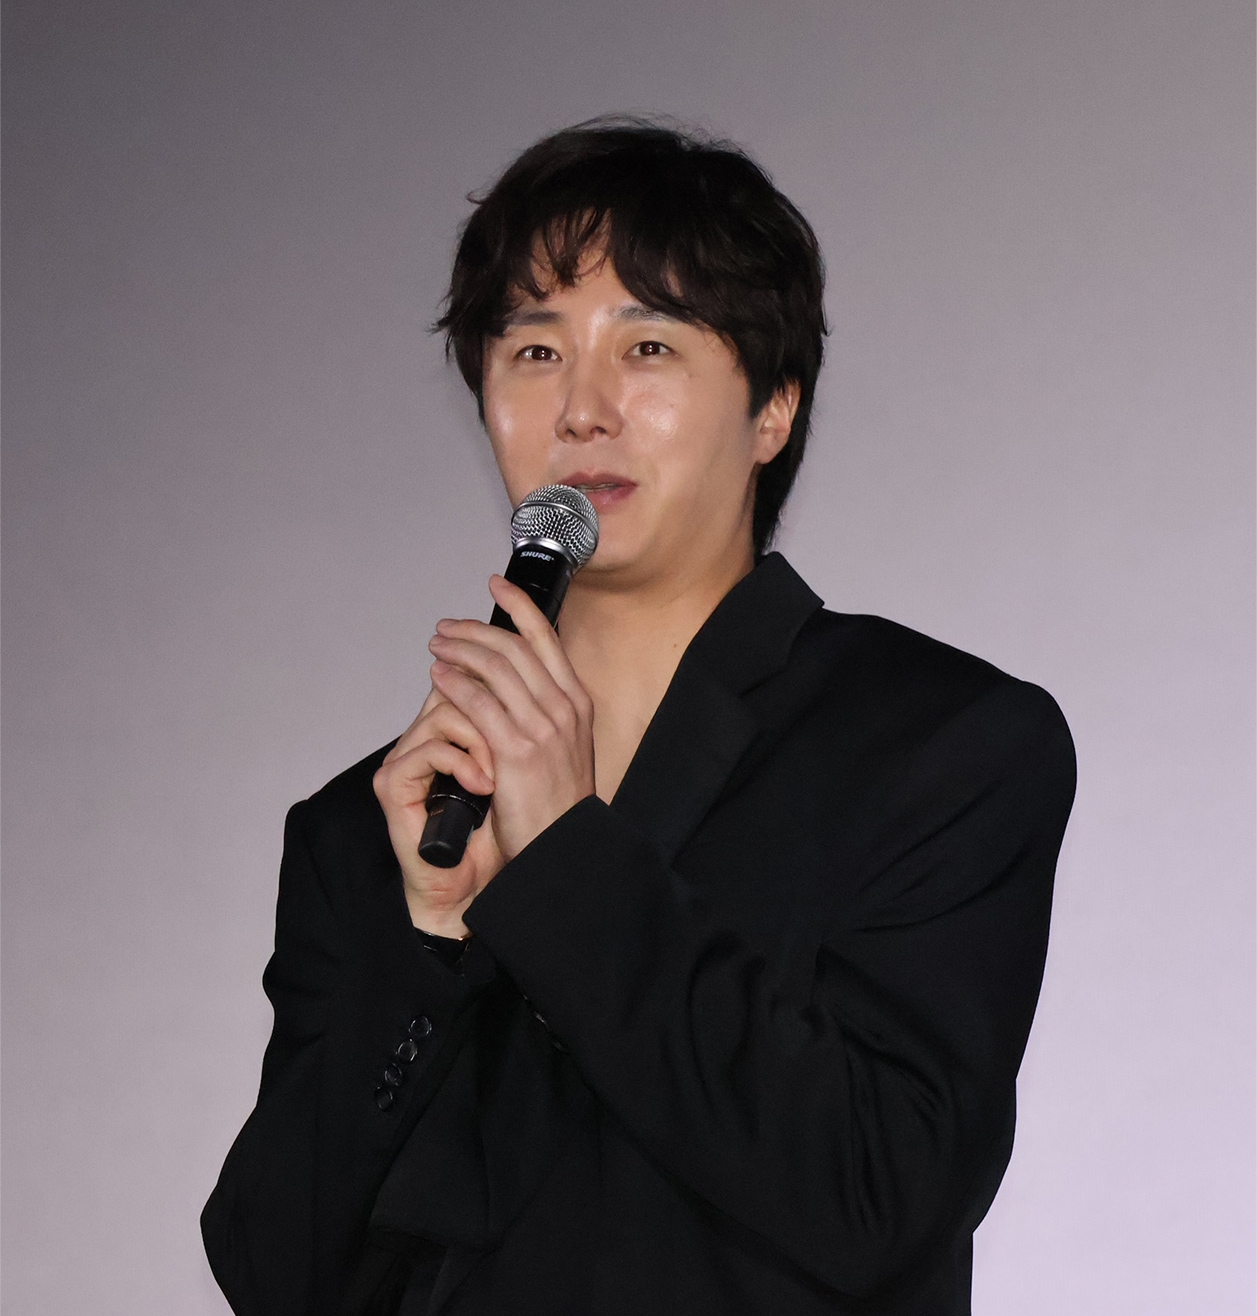 韓国映画「高速道路家族」のチョン・イル、イ・サンムン監督が 初日舞台挨拶に来日登壇
